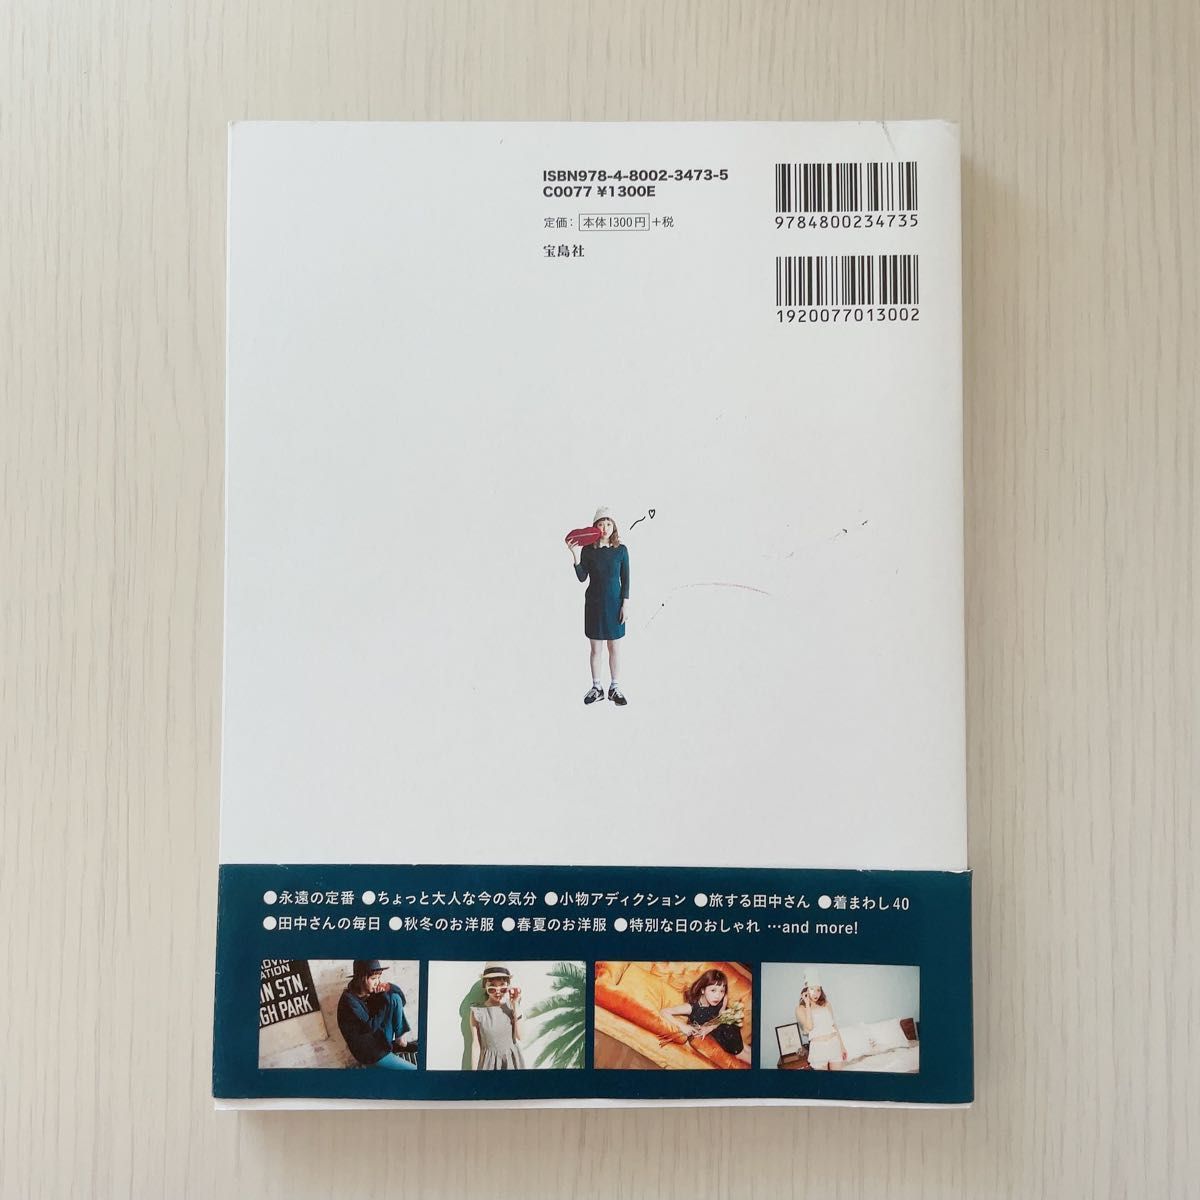 【即配送対応可】IS THIS ME? カリスマ読者モデルが贈る最新コーディネートBOOK 田中里奈